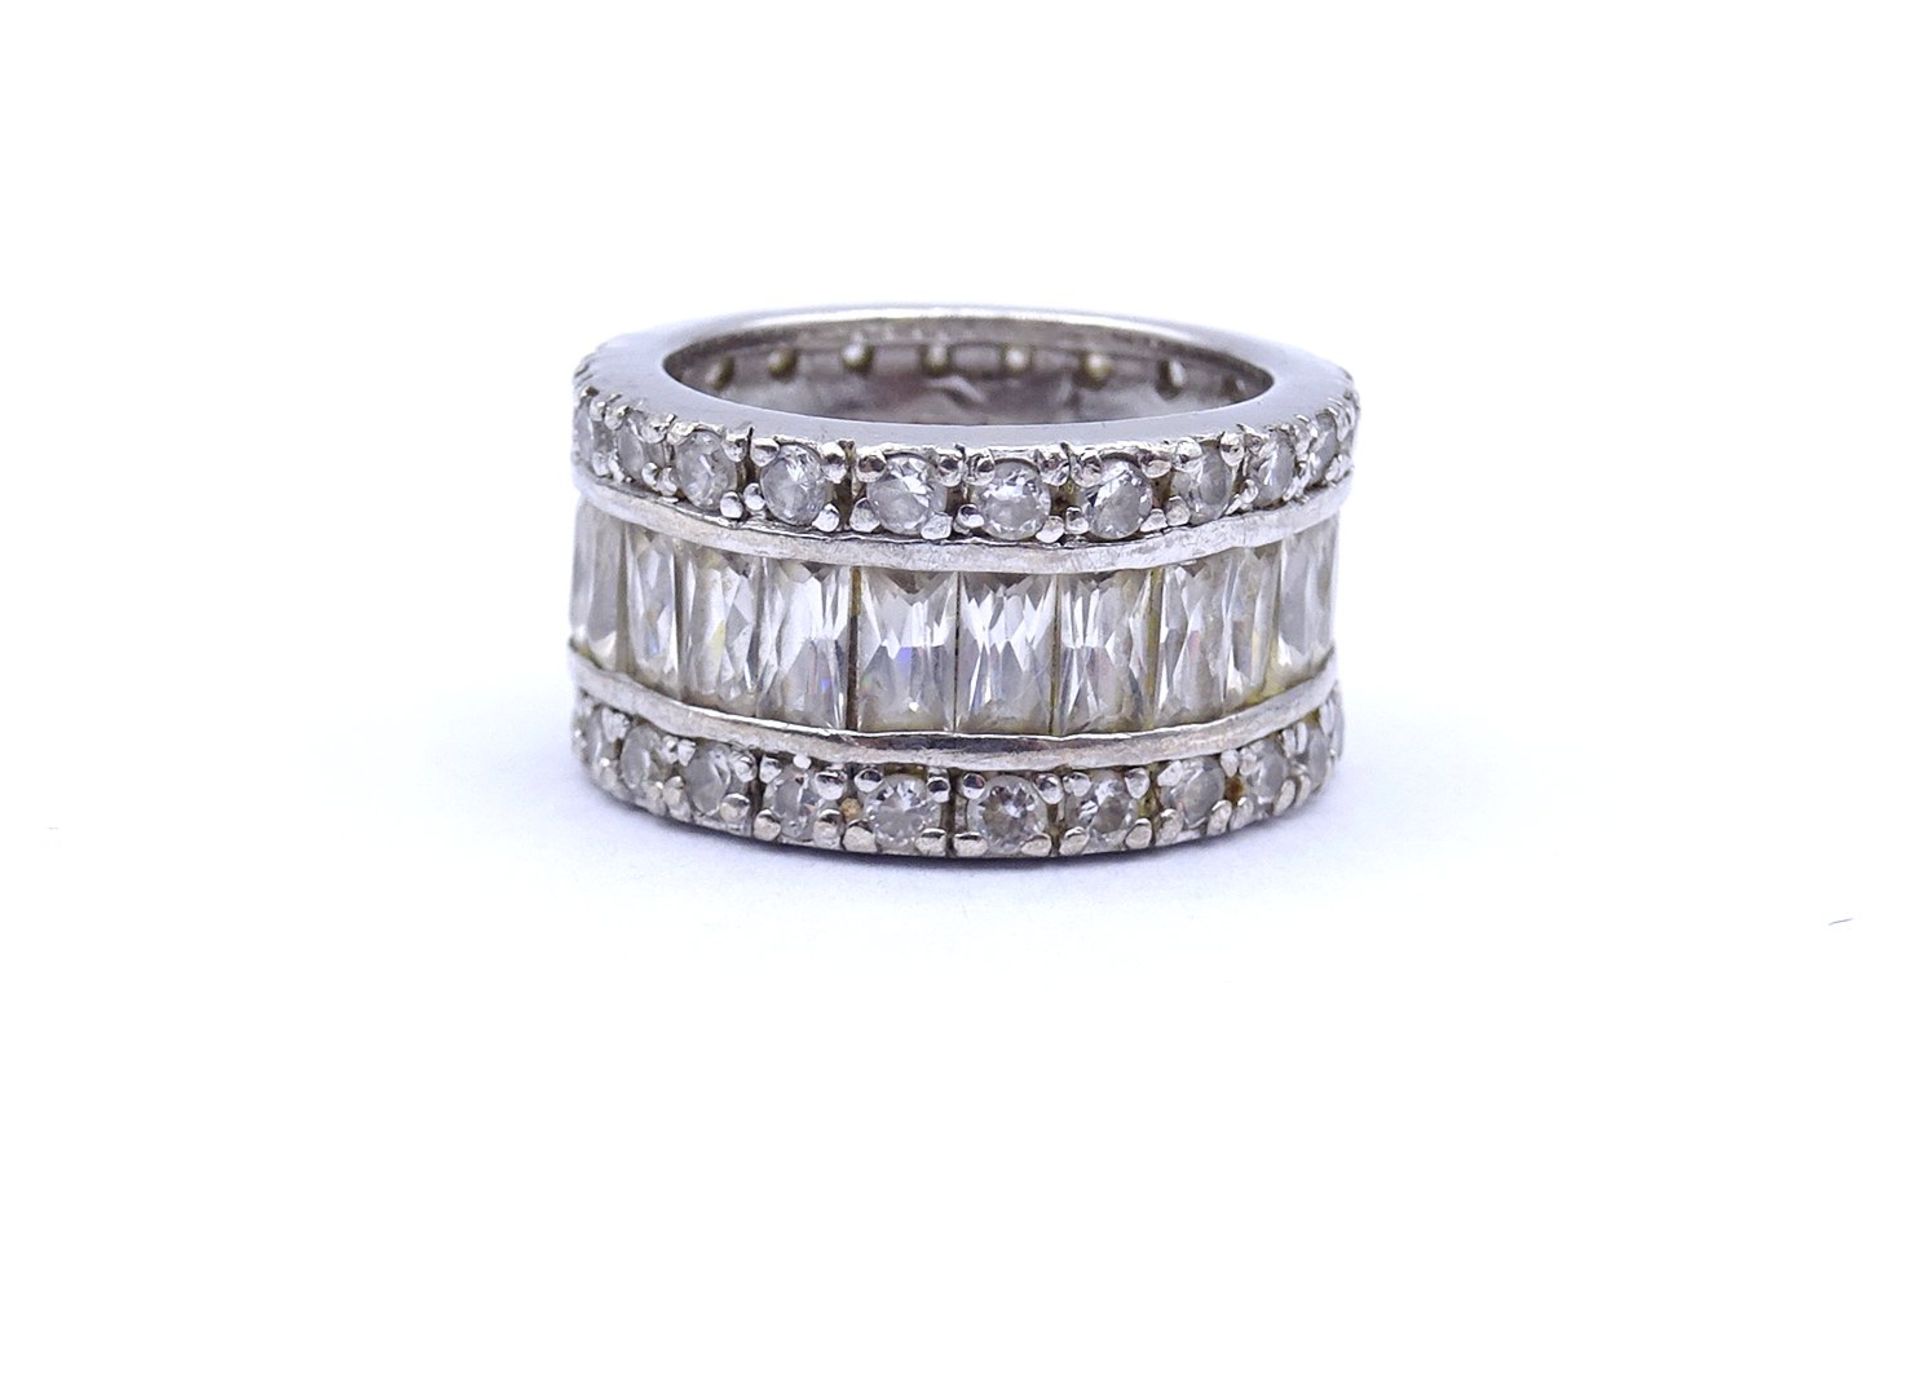 925er Silber Ring mit klaren Steinen, 9,6g., RG 52